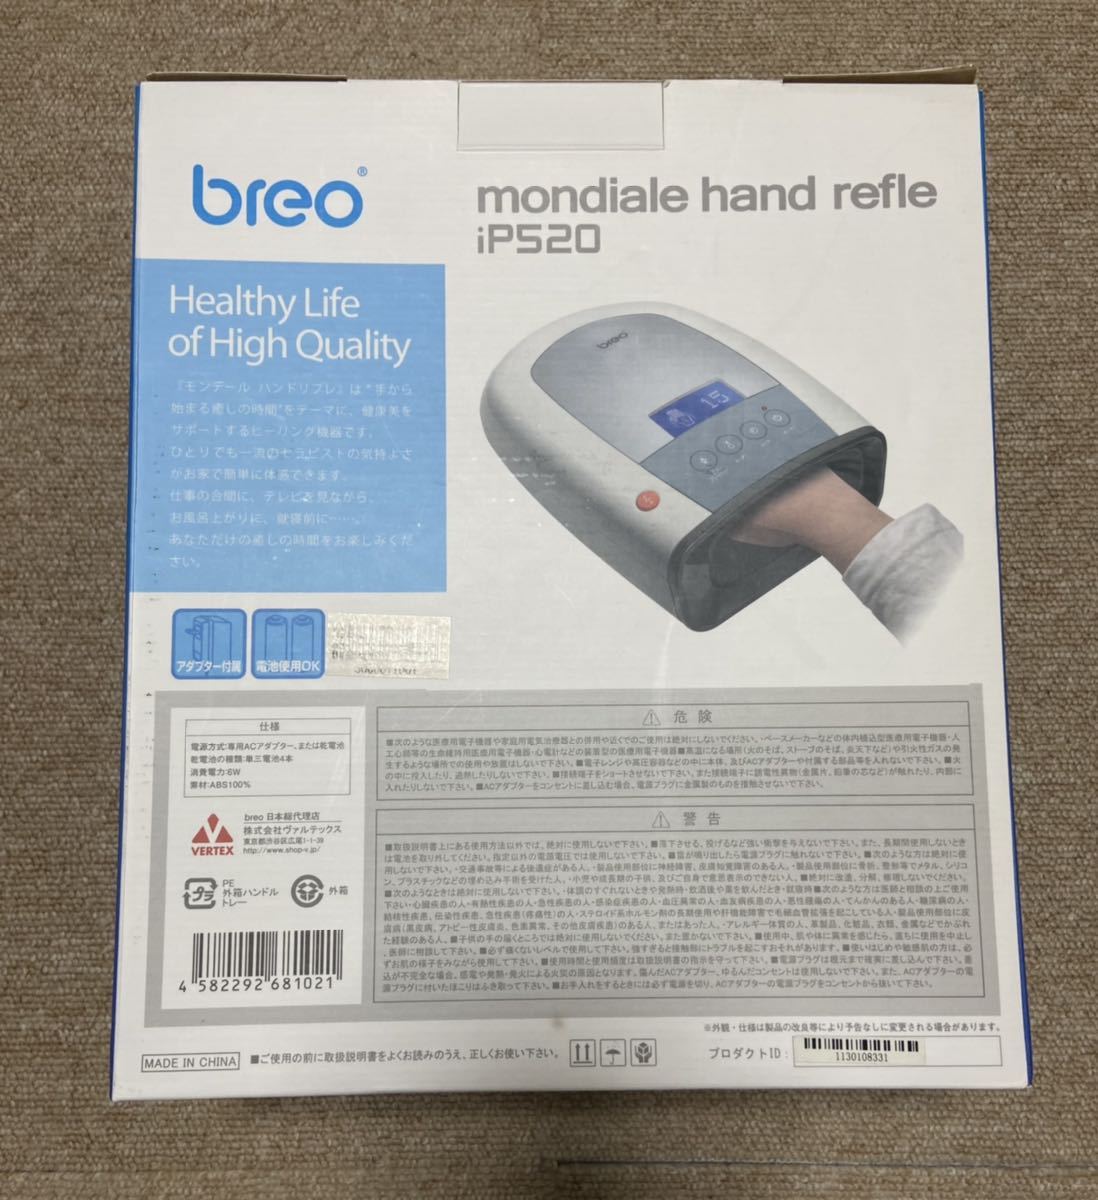 breo mondiale band refle iP520 モンデール ハンドリフレ マッサージ機 指先 手のひら あったか機能付 足裏 フット マッサッジャー_画像6